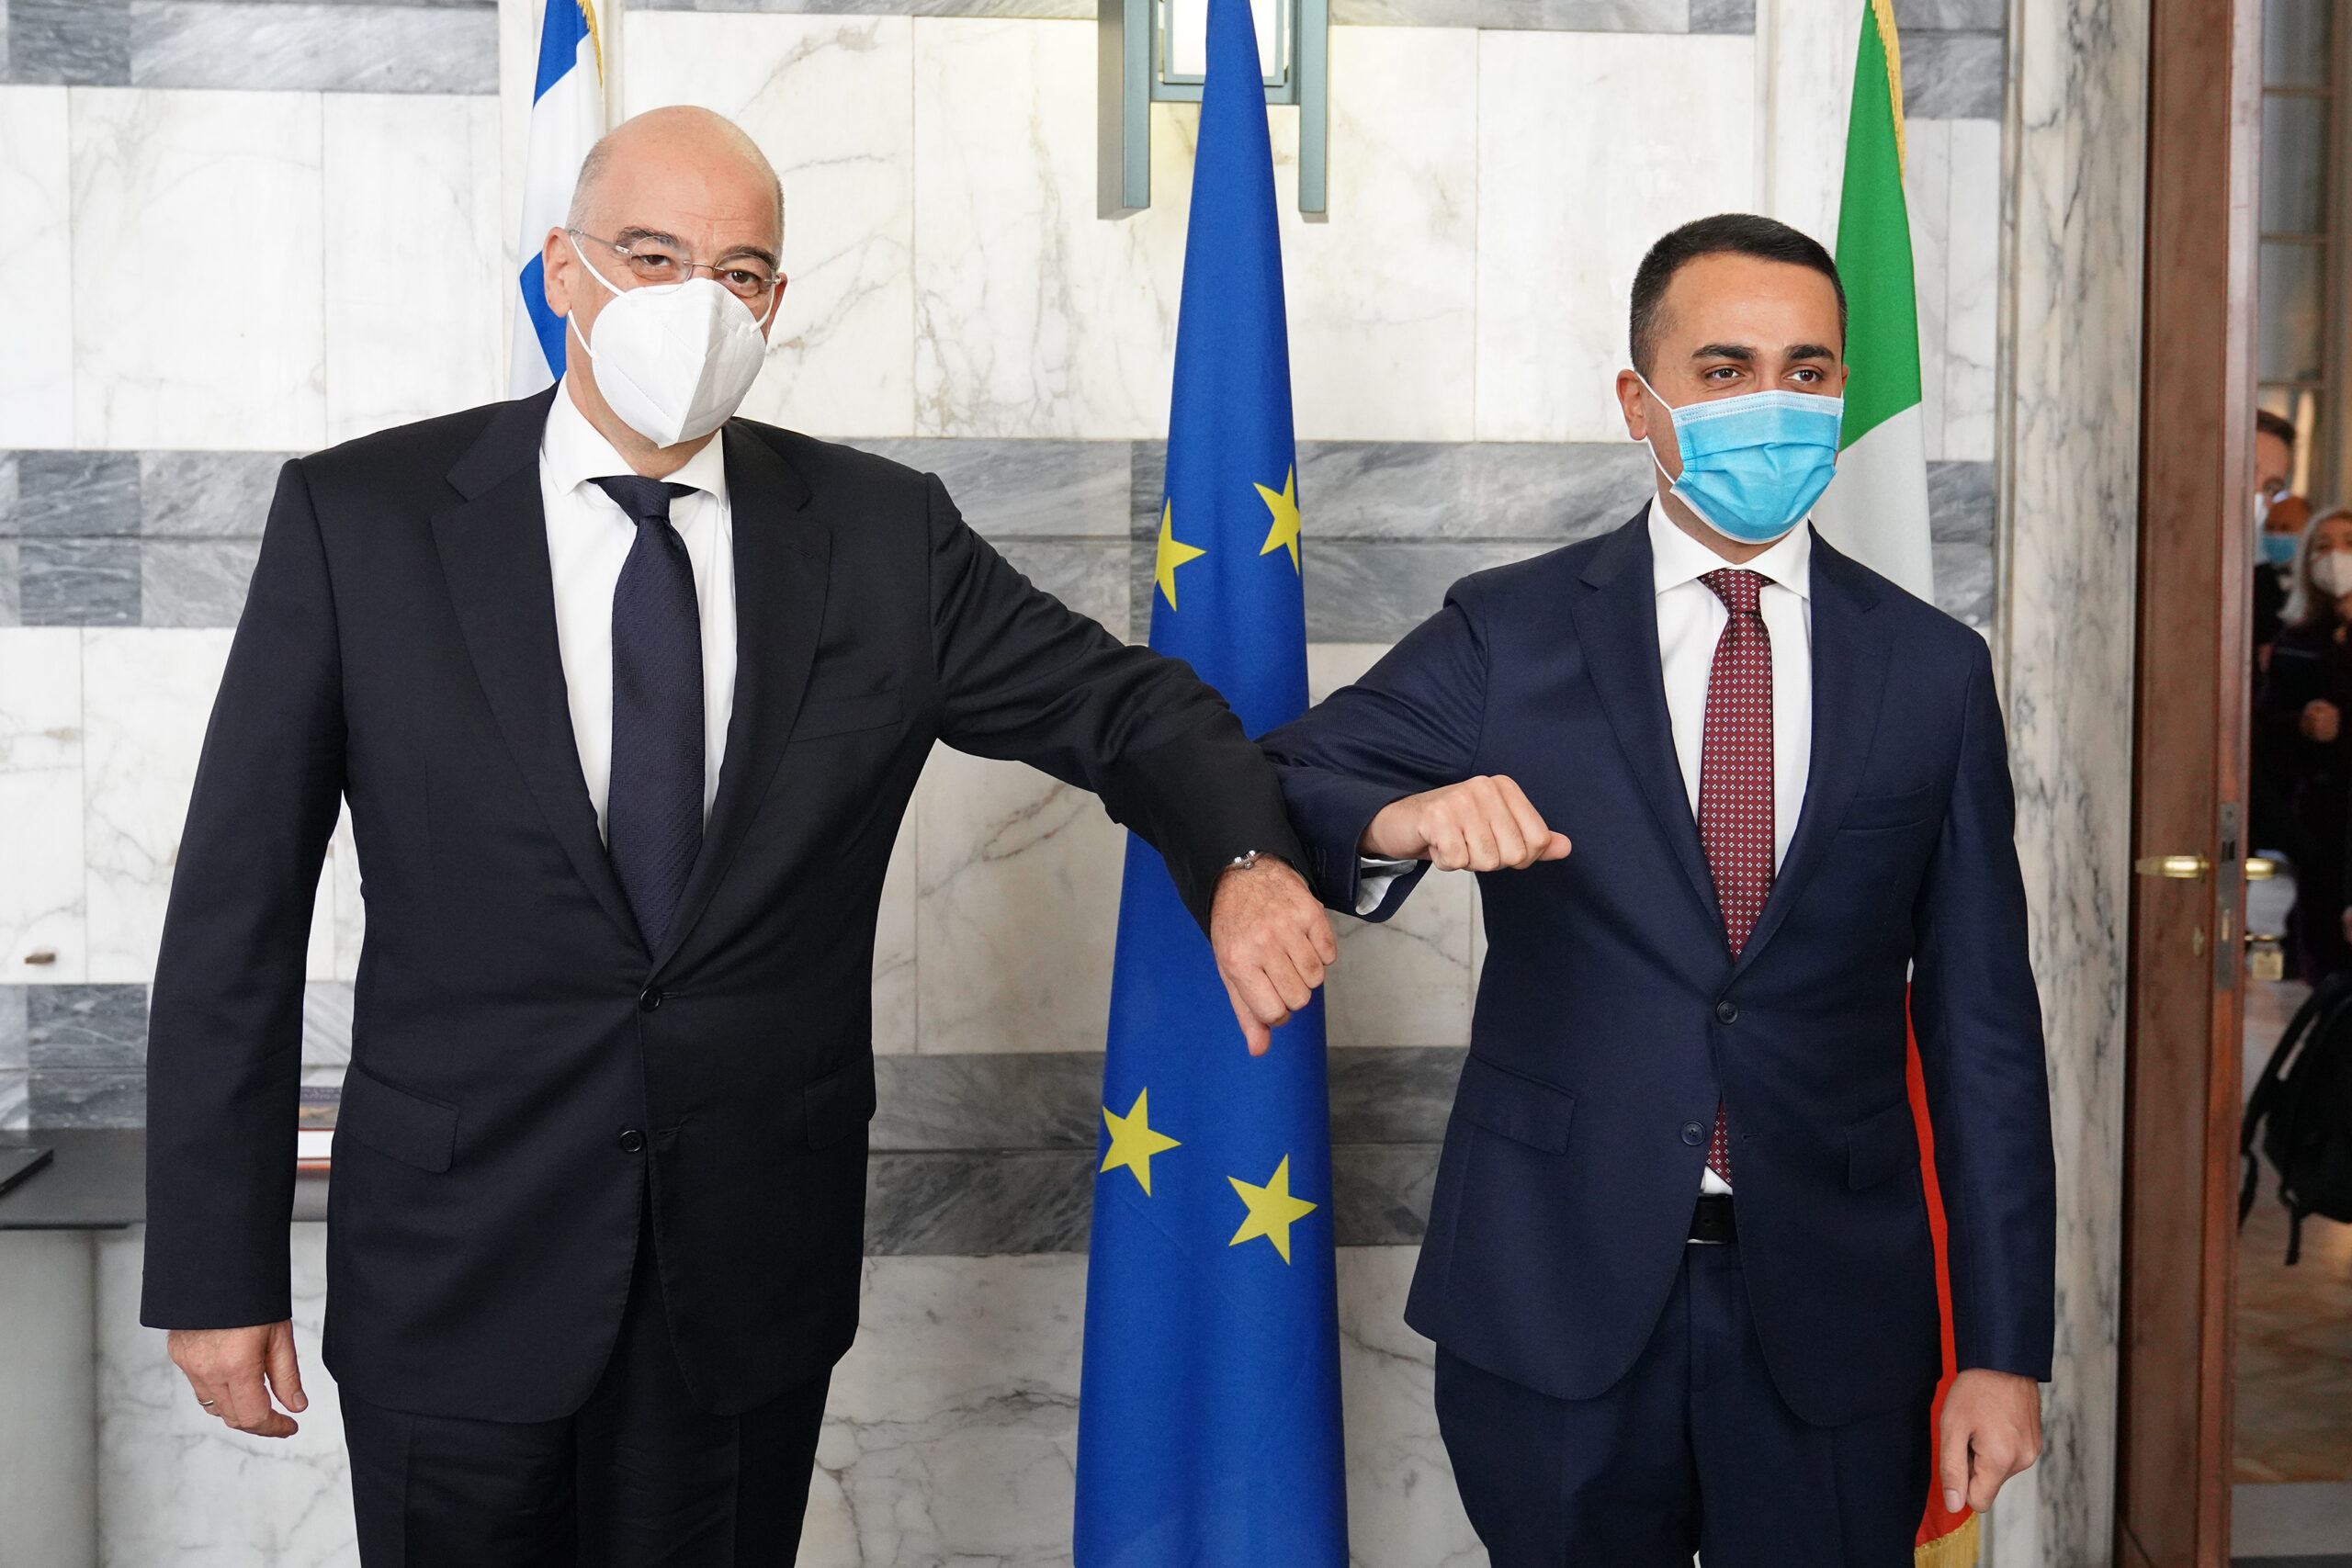 Επίσκεψη Υπουργού Εξωτερικών, Νίκου Δένδια, στην Ιταλία και στην Πορτογαλία. Στη Ρώμη ο κ. Δένδιας συνάντησε τον Ιταλό ομόλογό του, κ. Luigi Di Maio,  (Ρώμη,  13.01.2021)